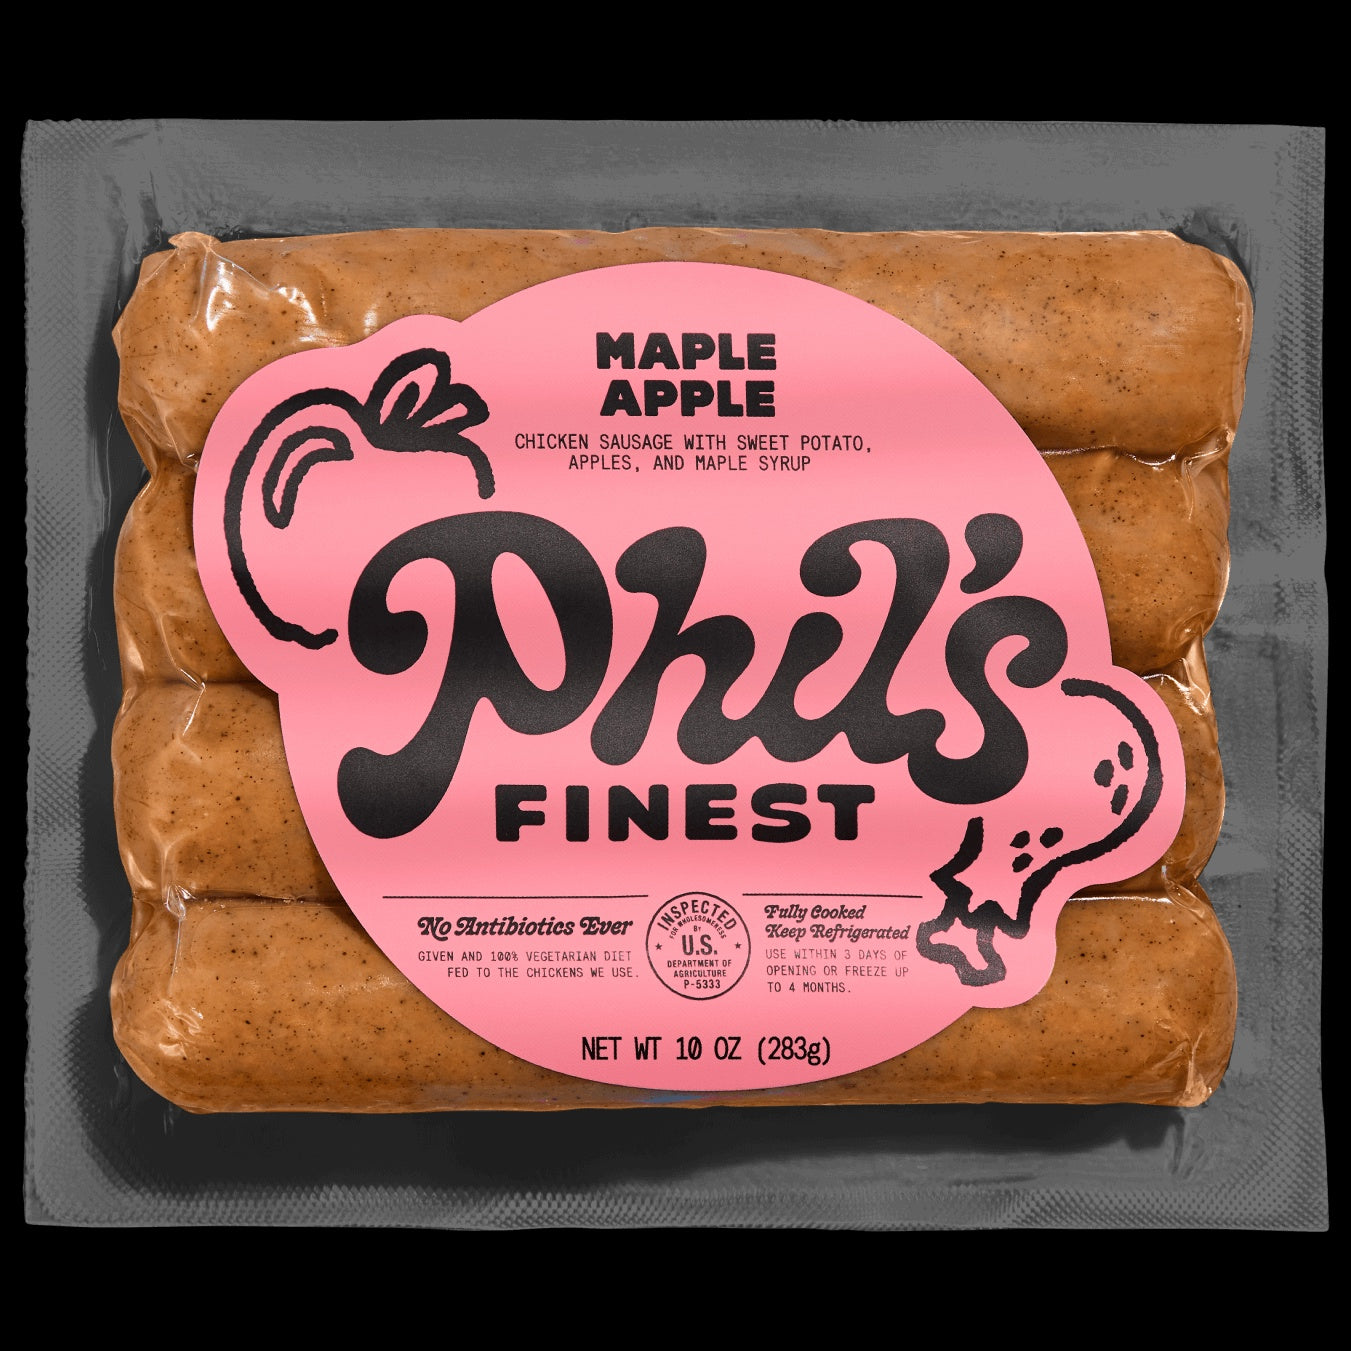 Phil's Finest: Maple Apple Chicken Sausage